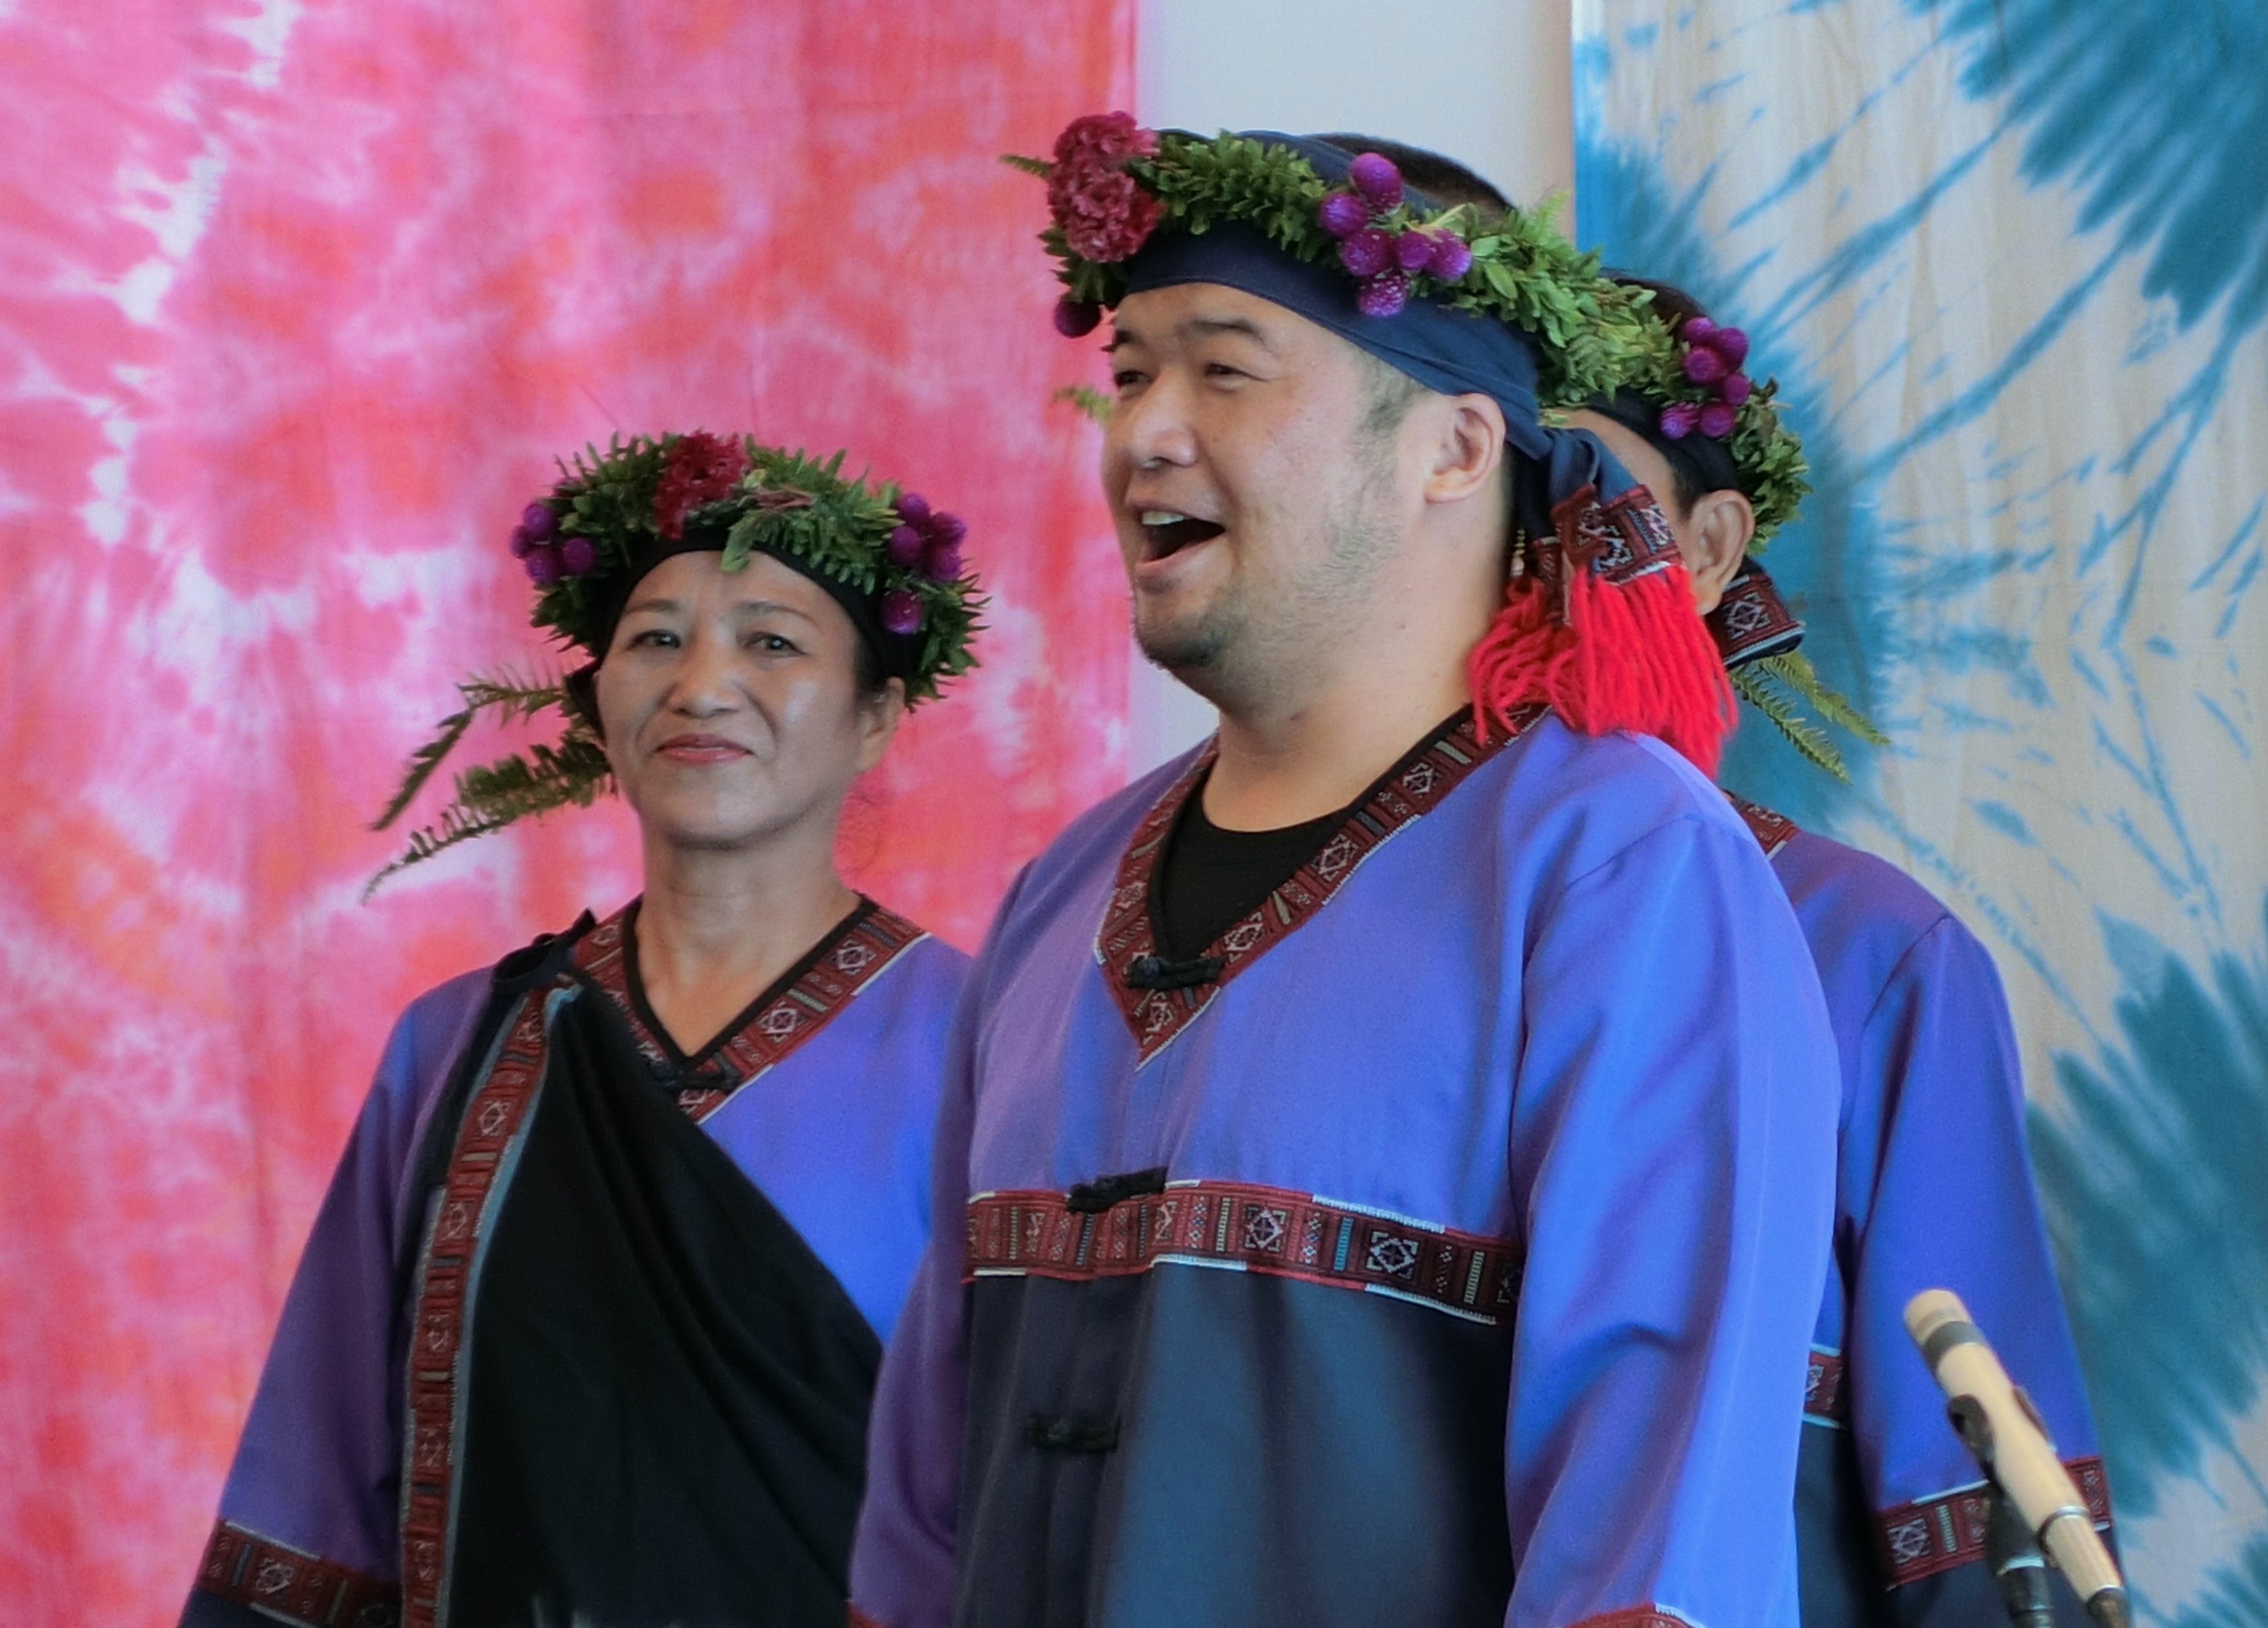 大滿舞團團員穿著大舞攏族傳統服飾演唱「小林之歌」，充滿思念家鄉與親人的一首創作曲，表達出小林村民當時的心境